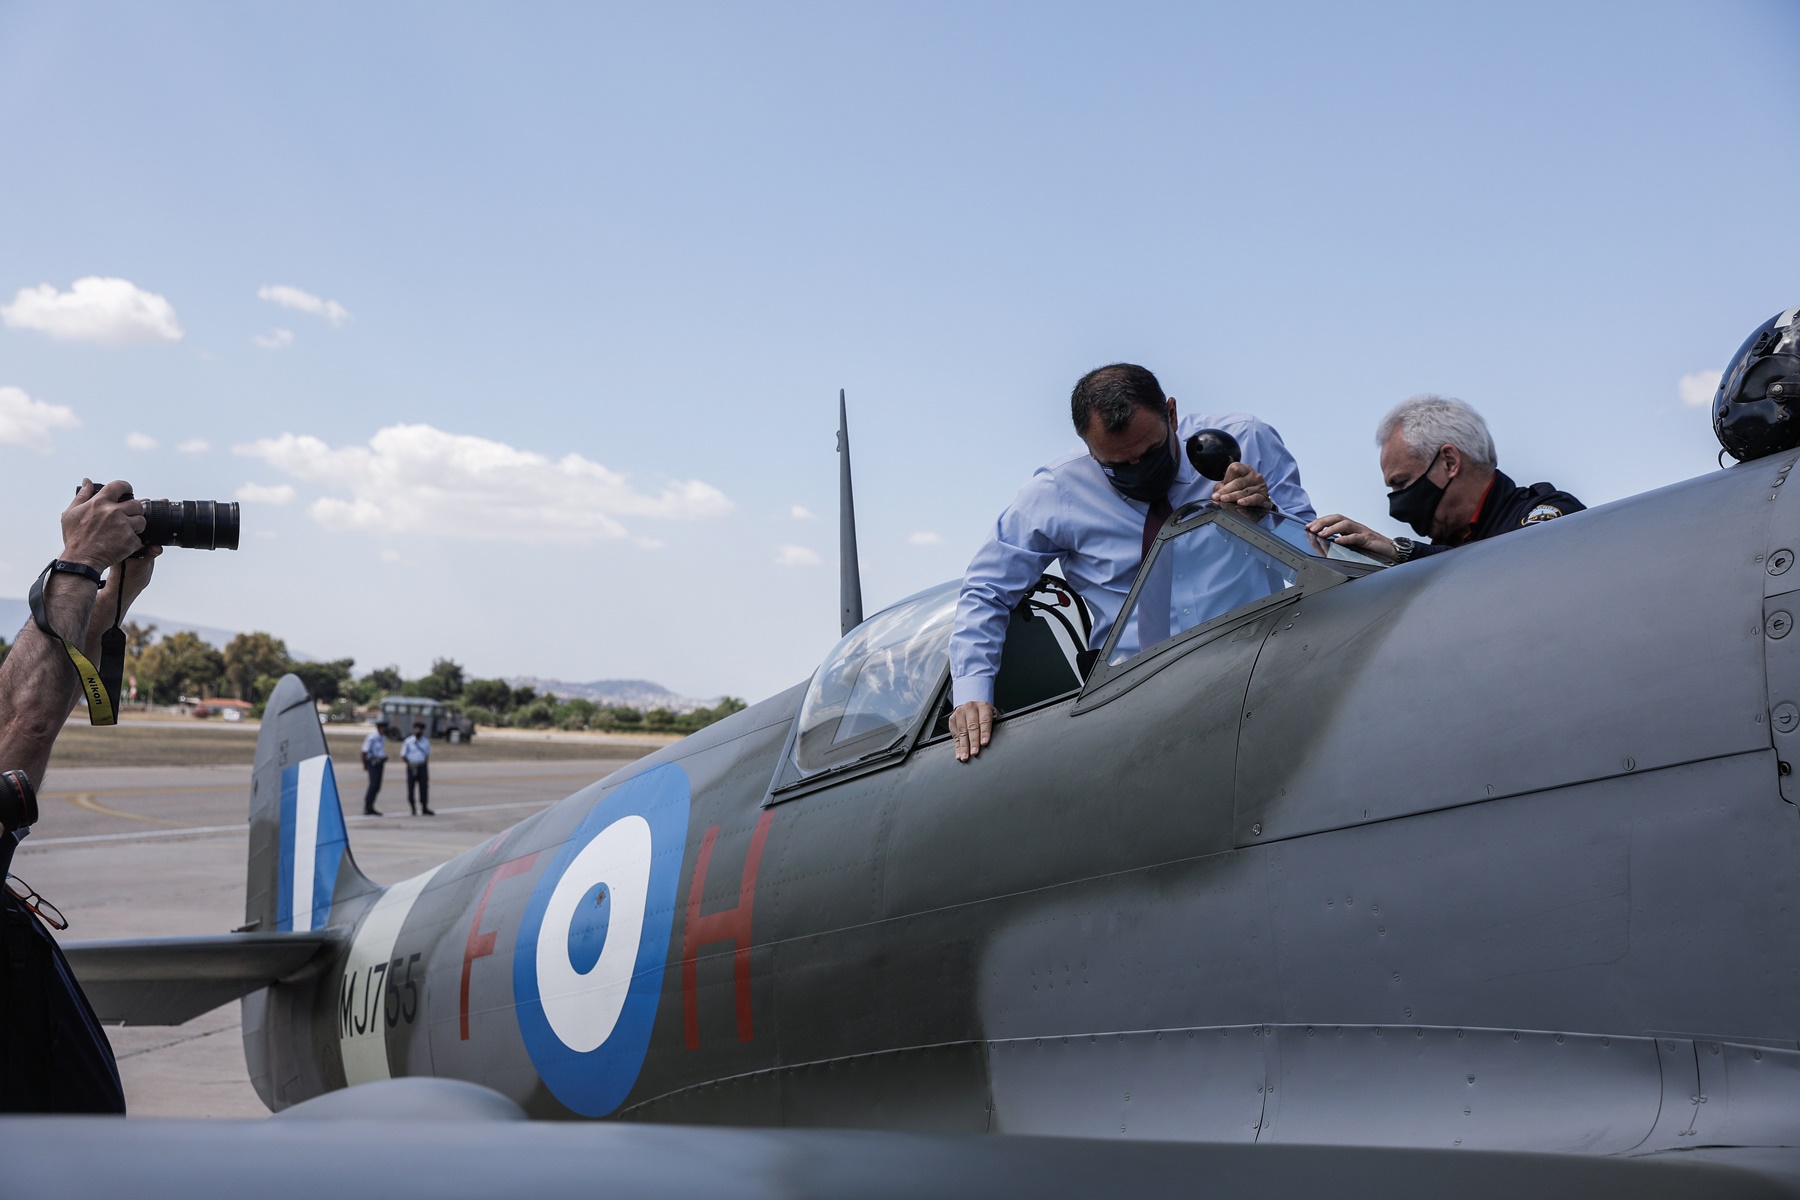 Spitfire Τατόι: Ο Παναγιωτόπουλος στην τελετή υποδοχής του θρυλικού αεροσκάφους